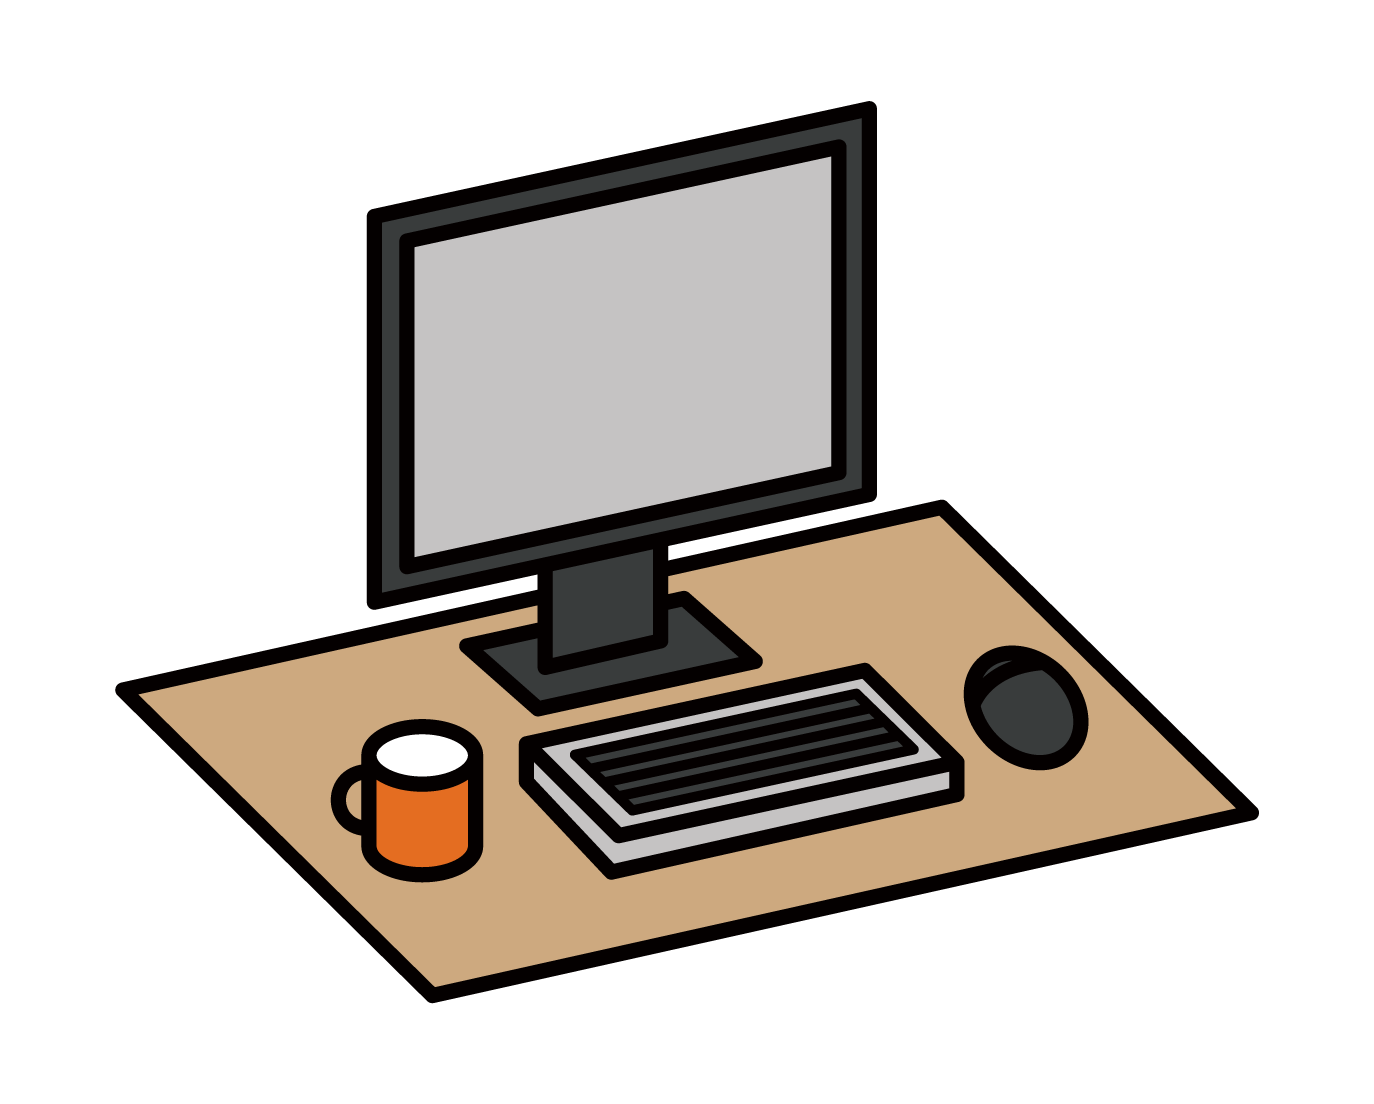 電腦桌和辦公桌的插圖